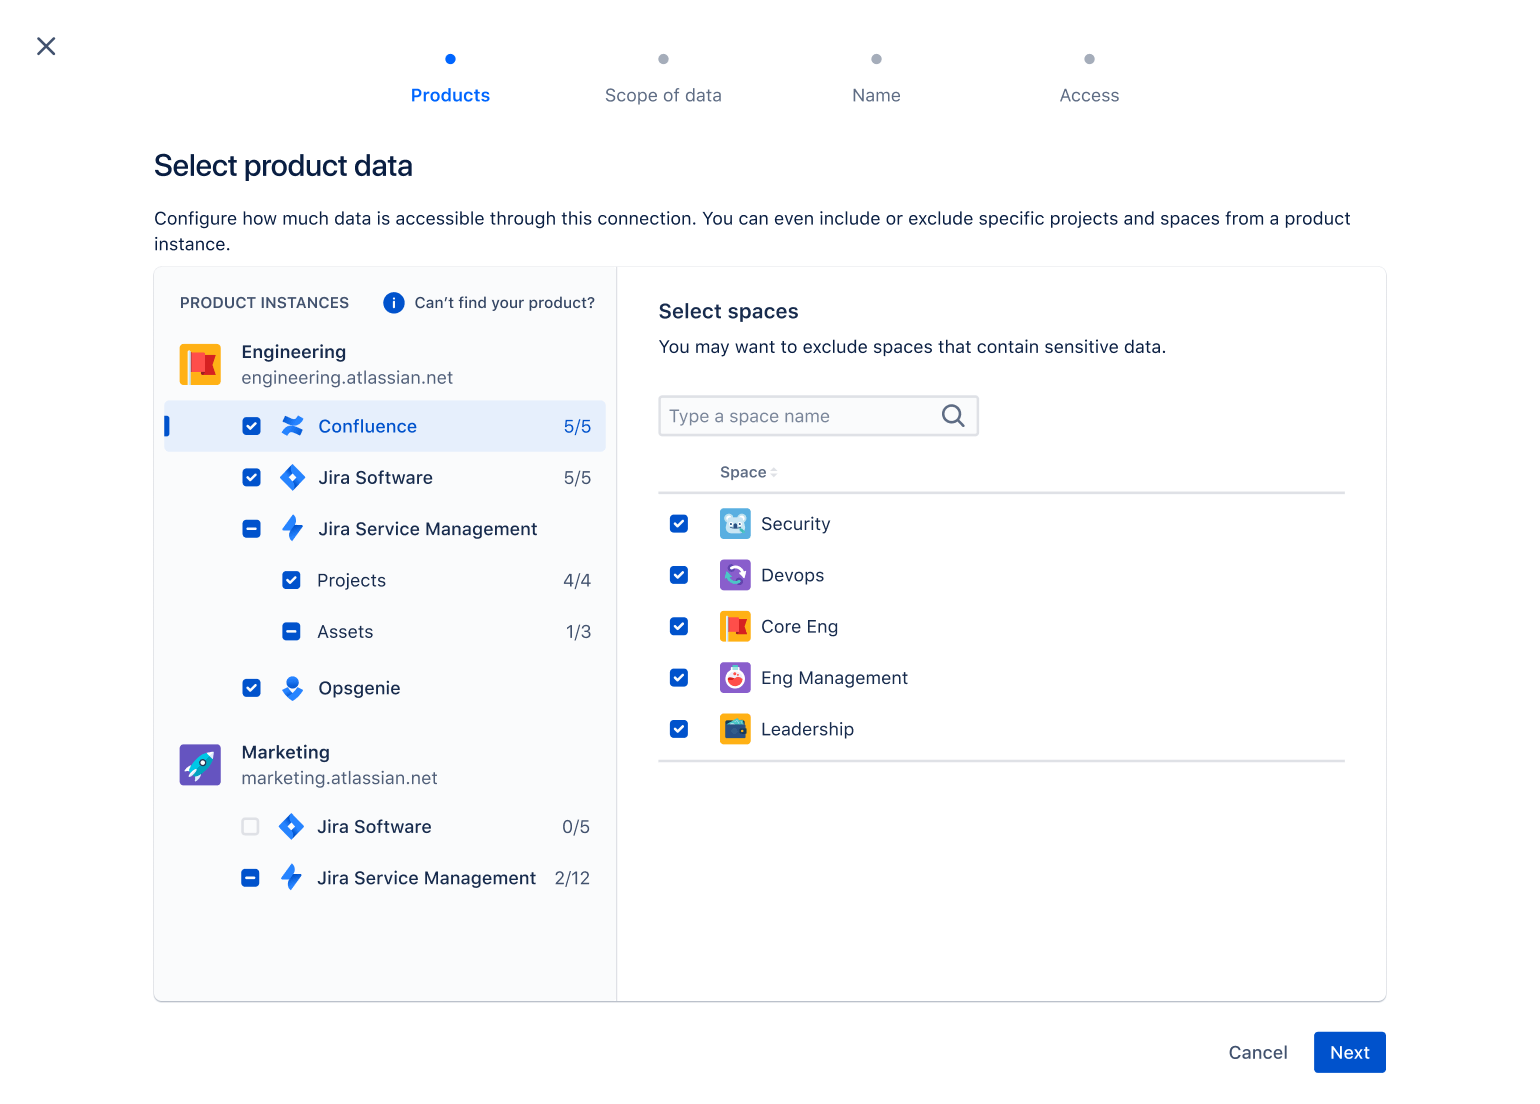 Pantalla de selección de datos del producto que muestra cómo seleccionar los datos de medición de los productos de Atlassian que cumplan los requisitos.